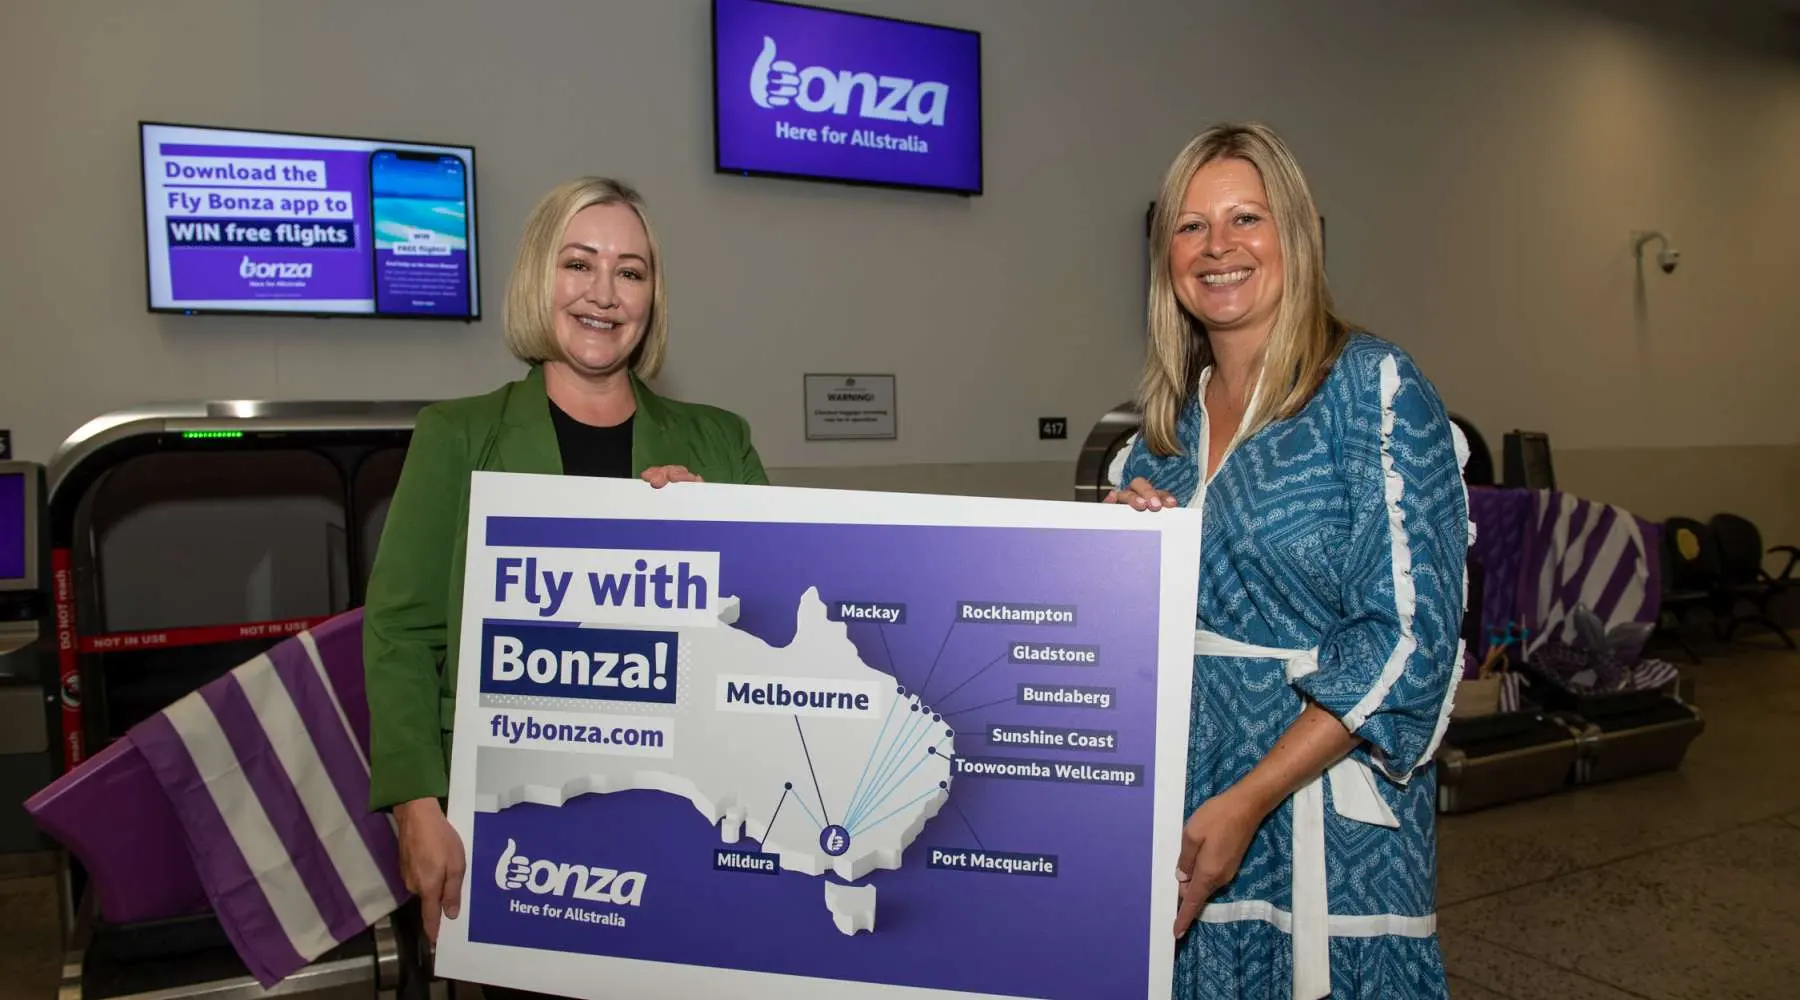 Bonza's Melbourne media launch event